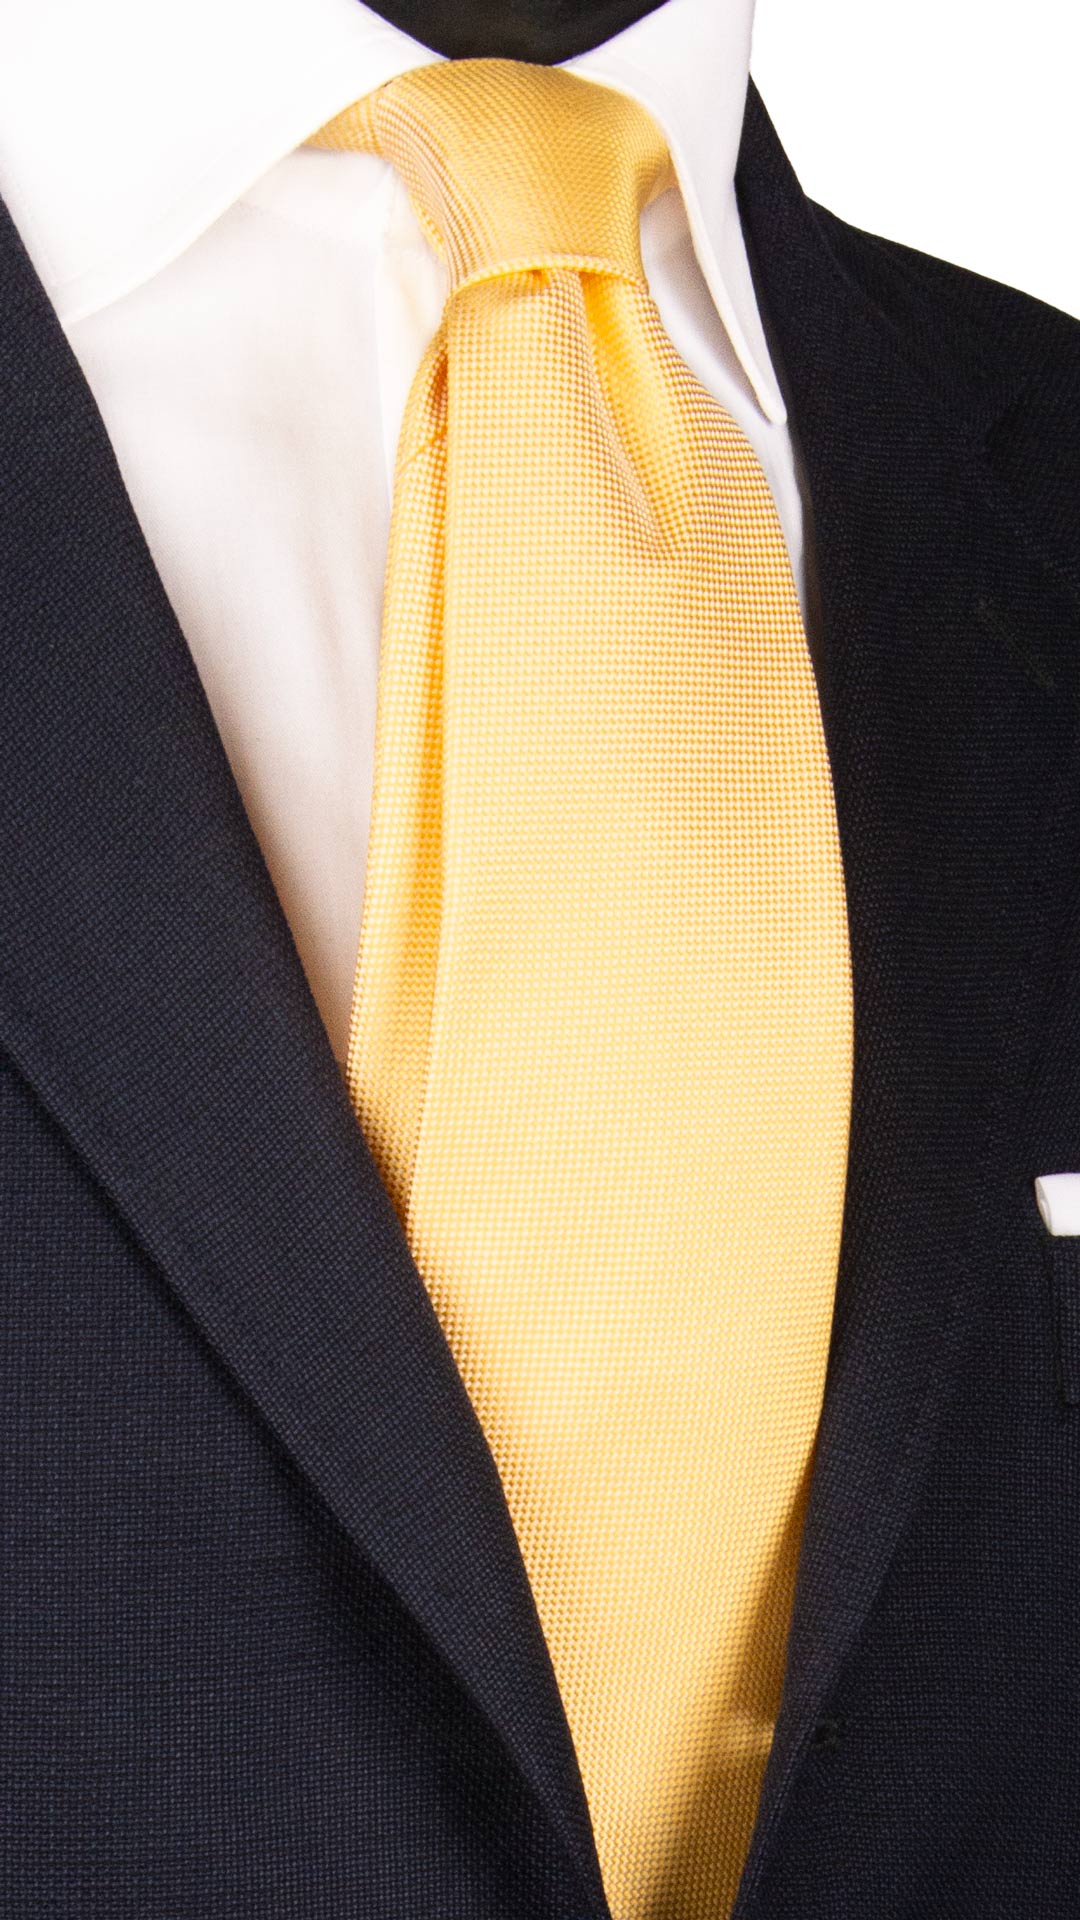 Cravatta di Seta Gialla Tinta Unita 7035 Made in Italy Graffeo Cravatte